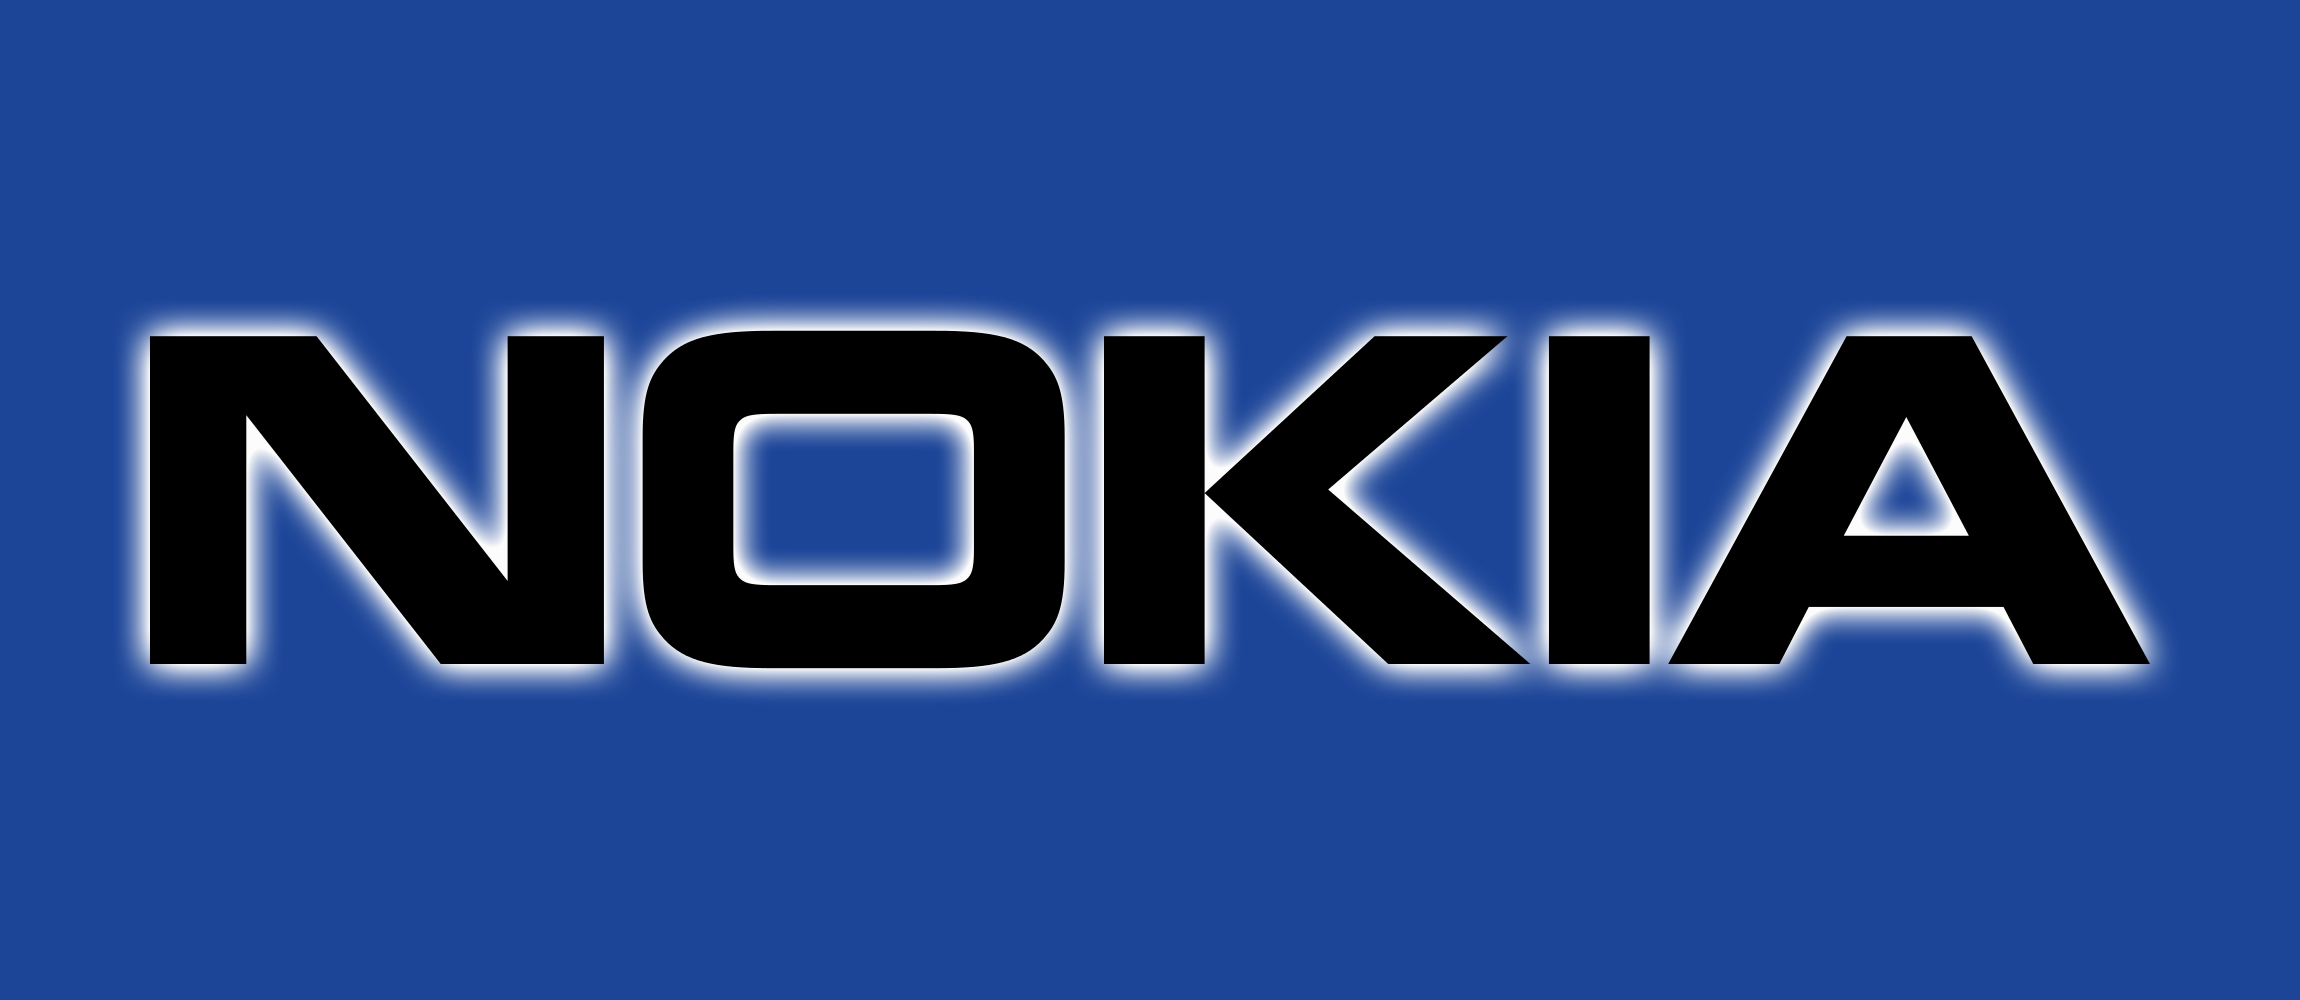 Nokia Symbol